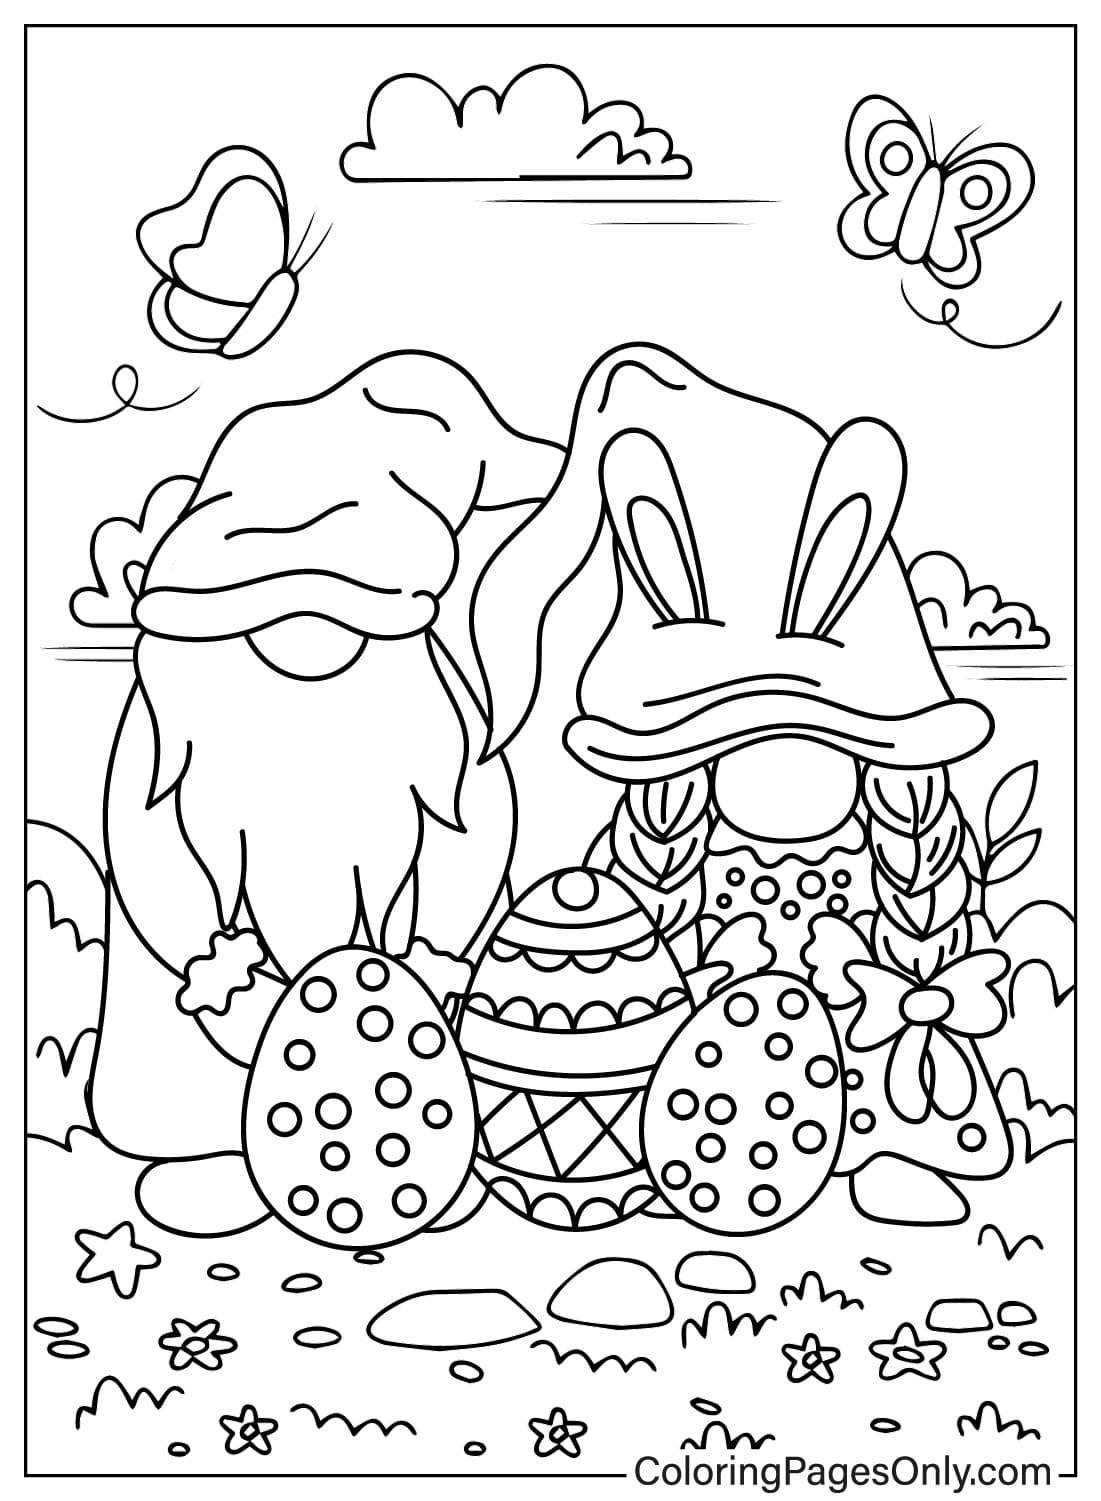 Página para colorir do Gnomo da Páscoa para impressão do Gnomo da Páscoa